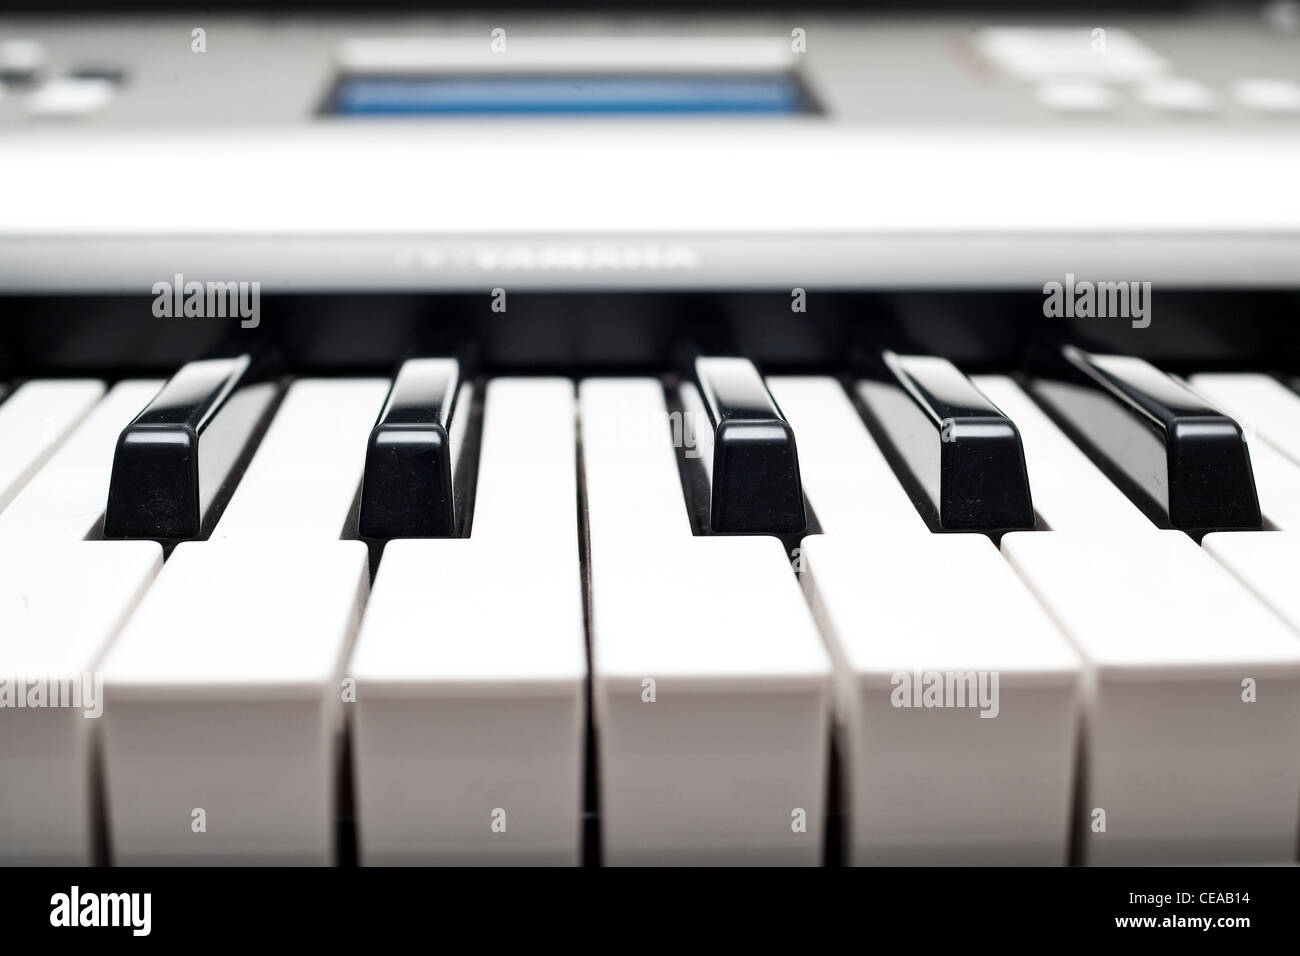 A Yamaha Keyboard Stock Photo